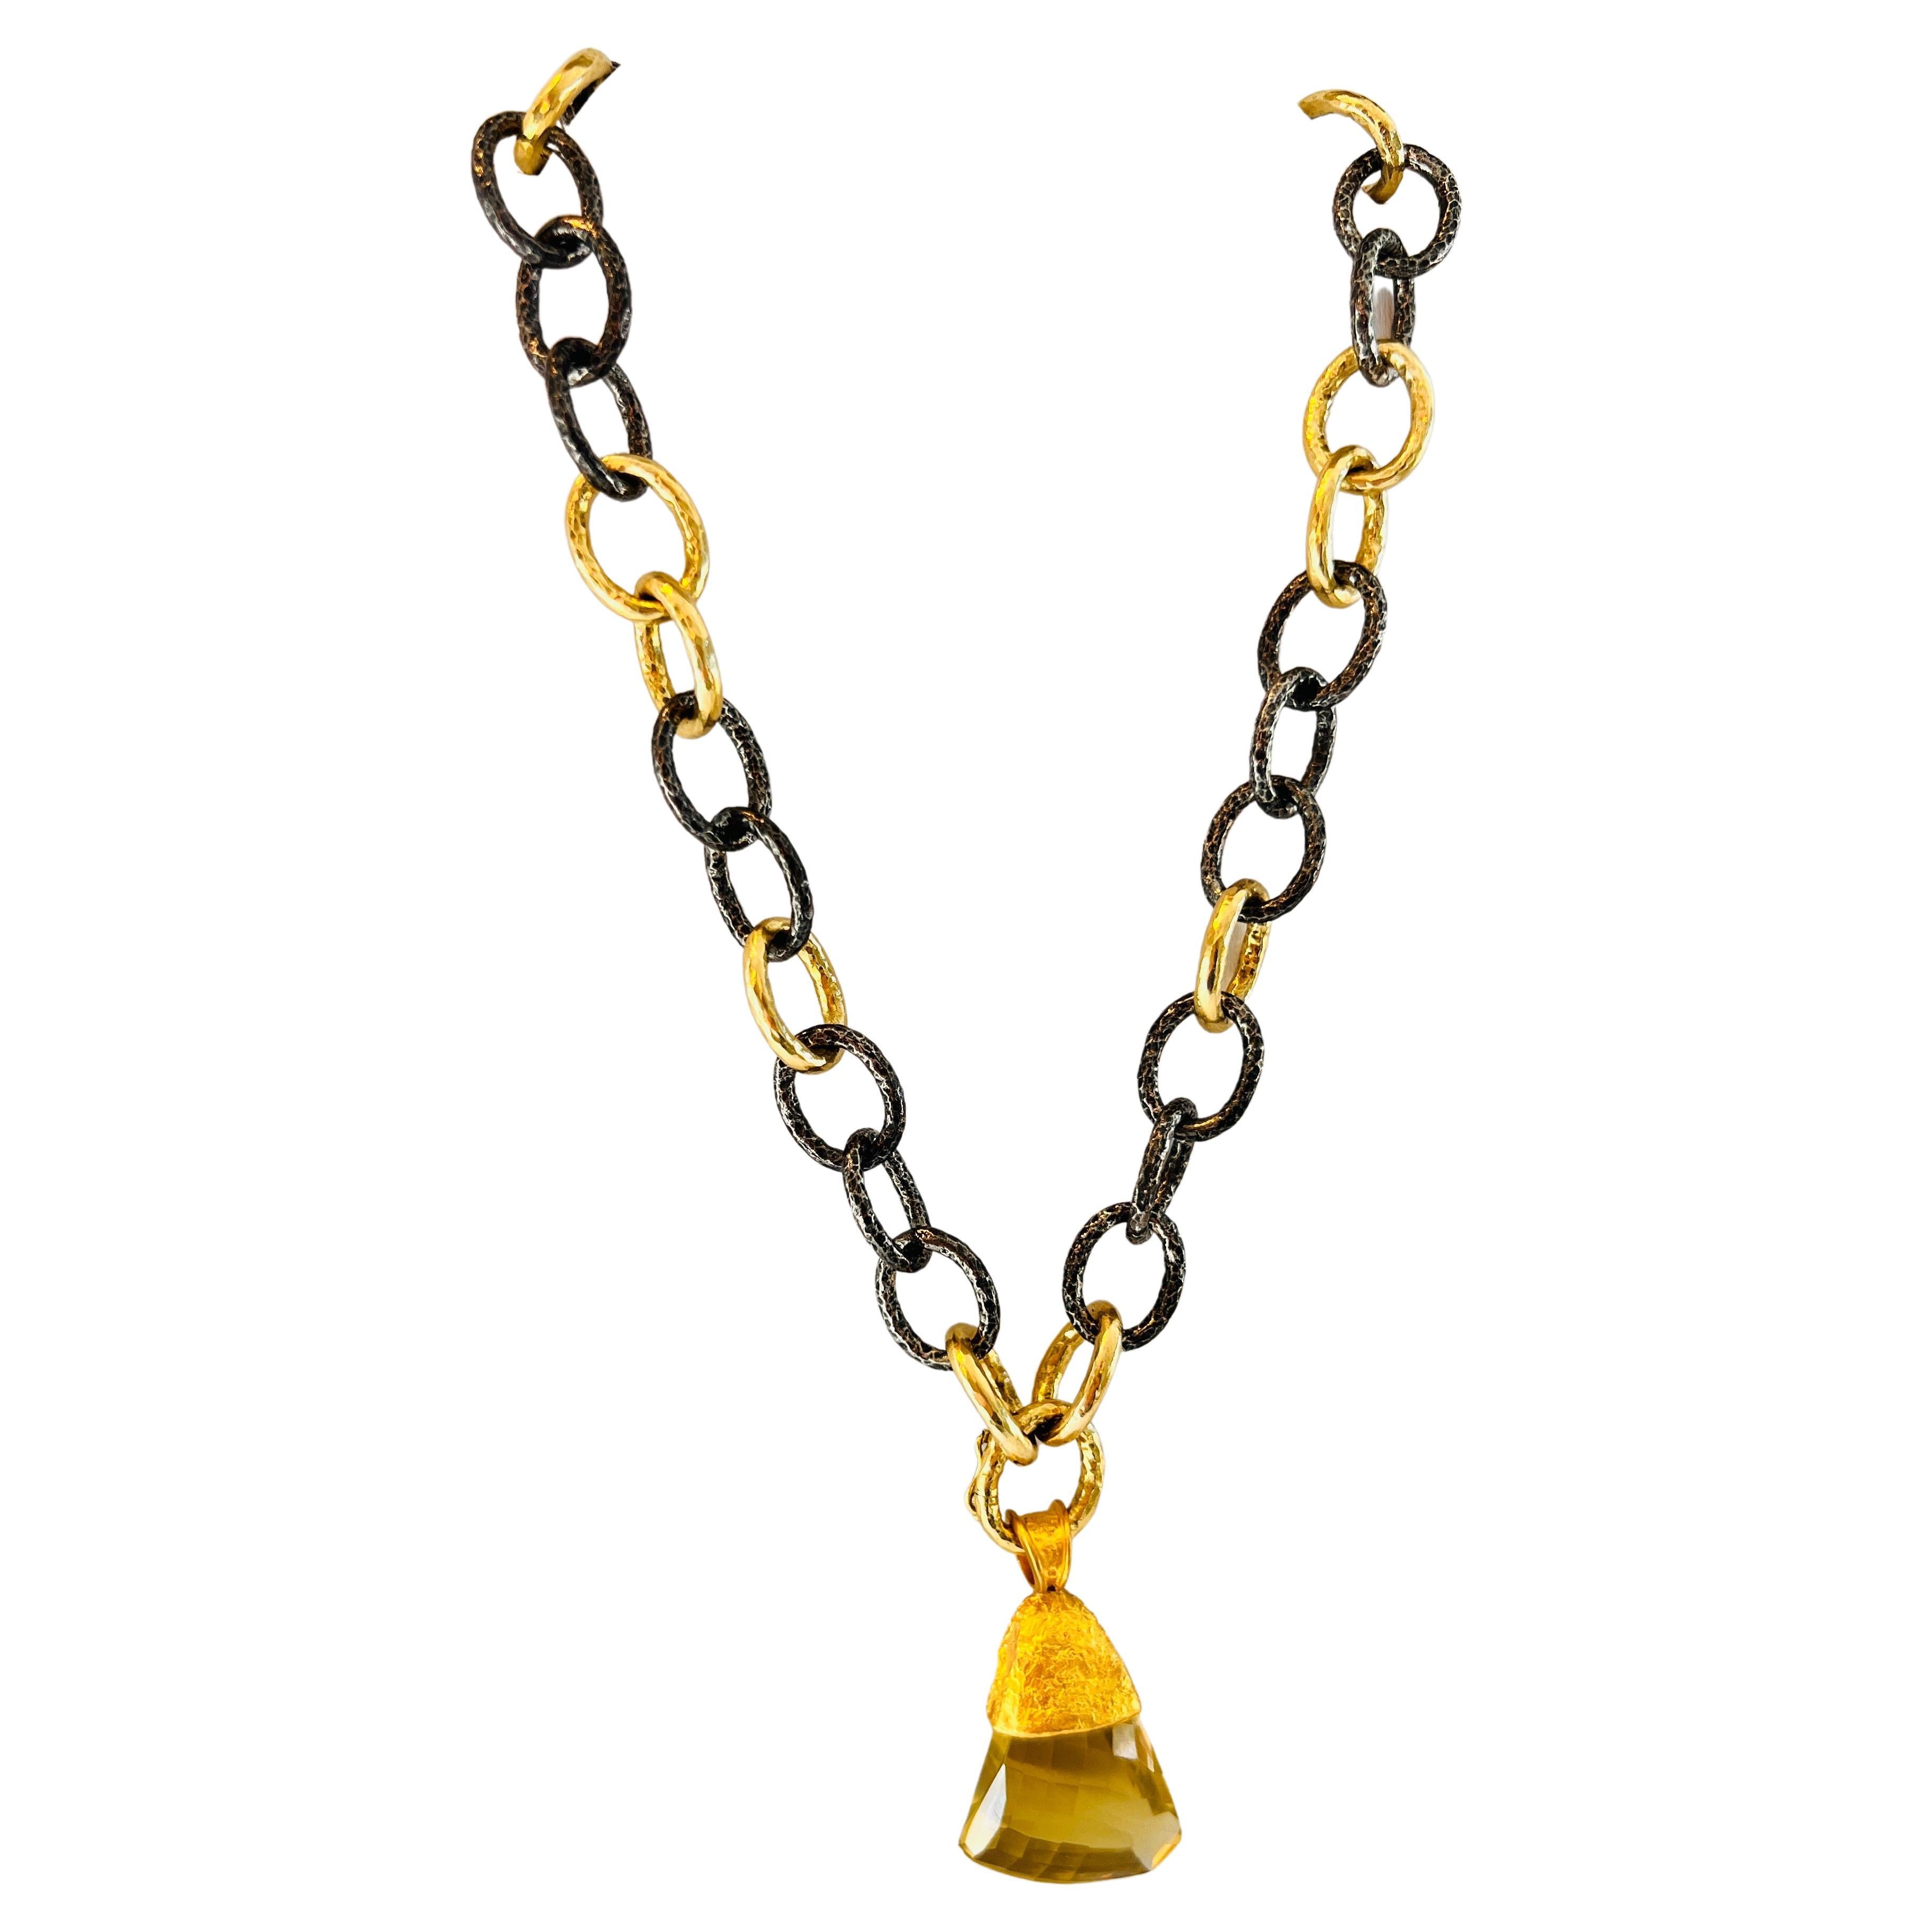 Le collier 50/50 en argent noirci et or de 40,64 cm, par Tagili